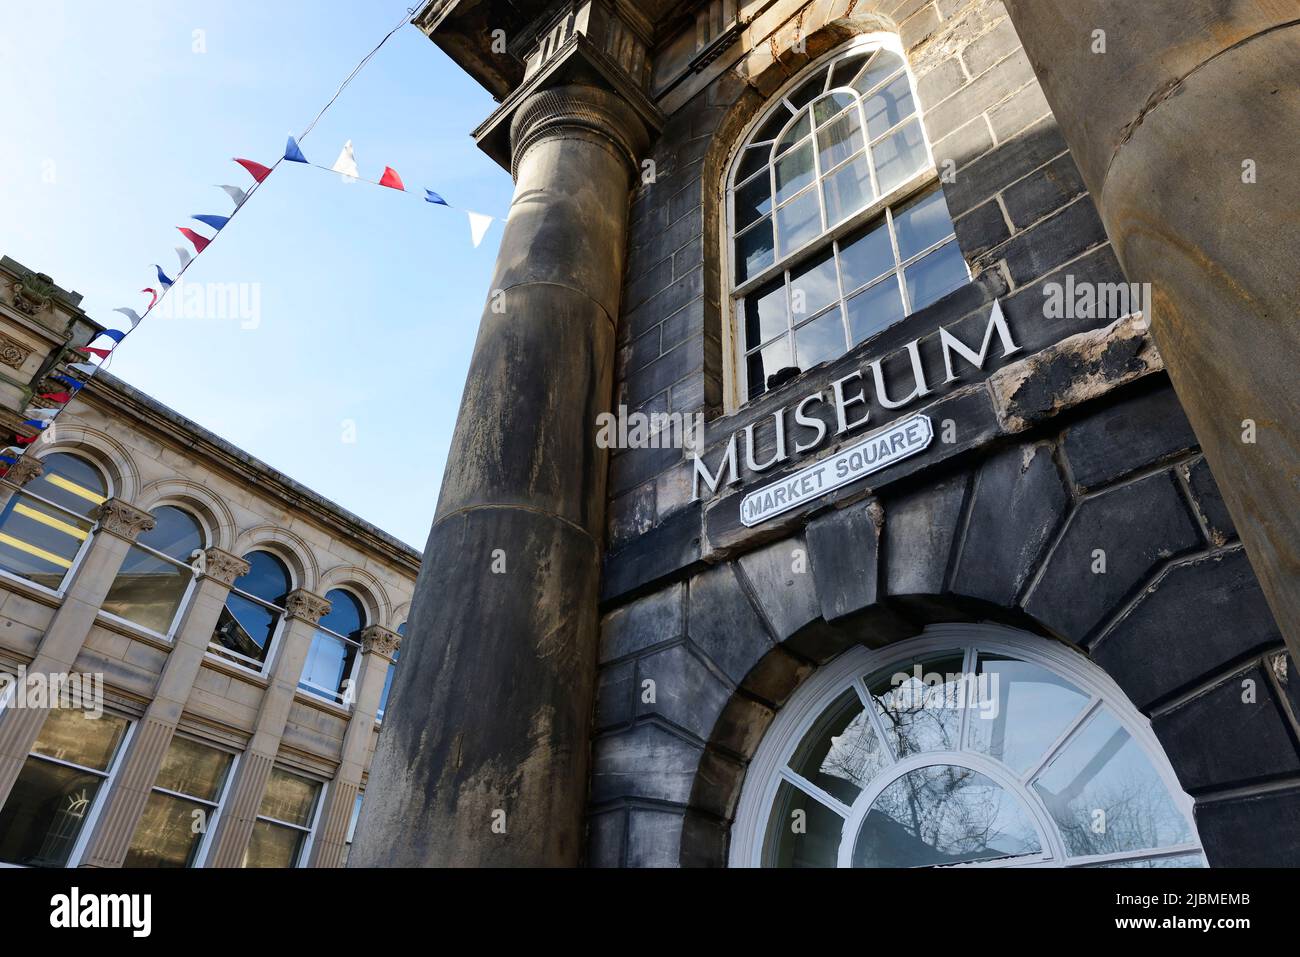 L'extérieur du musée de la ville de Lancaster, sur la place du marché, dans le centre-ville de Lancaster, au Royaume-Uni Banque D'Images